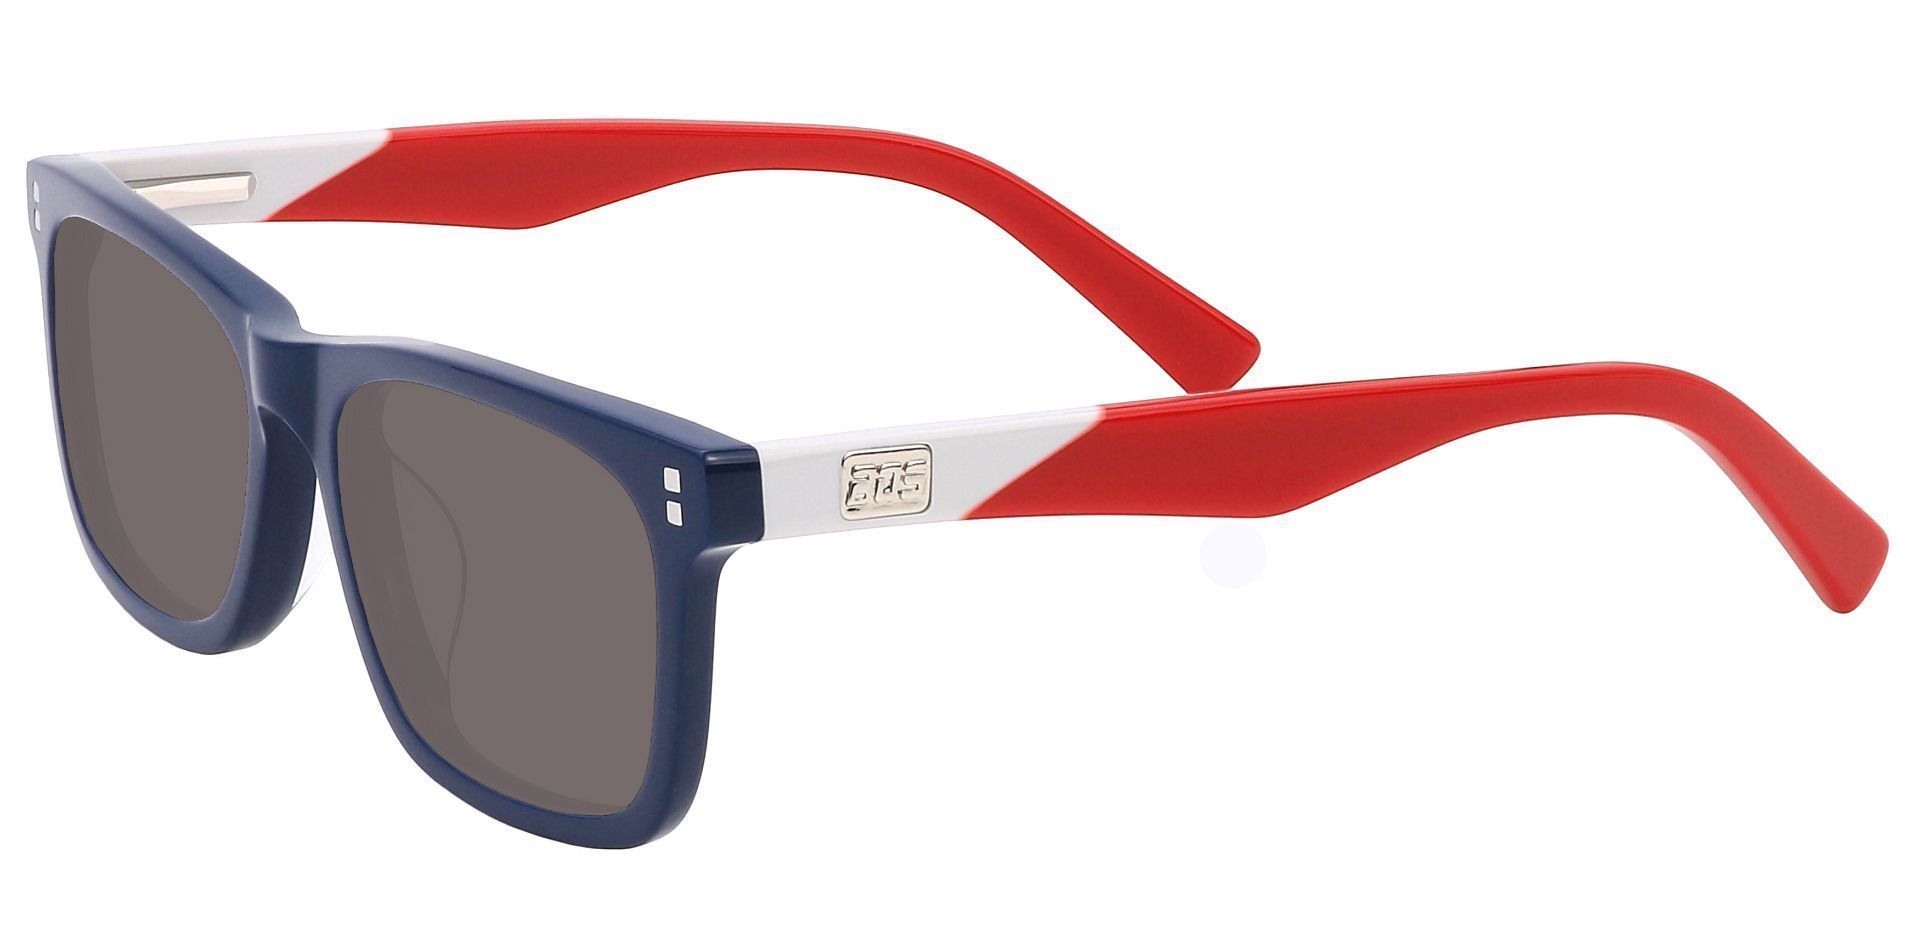 Harbor Rectangle Progressive Sunglasses - Blue Frame With Gray Lenses